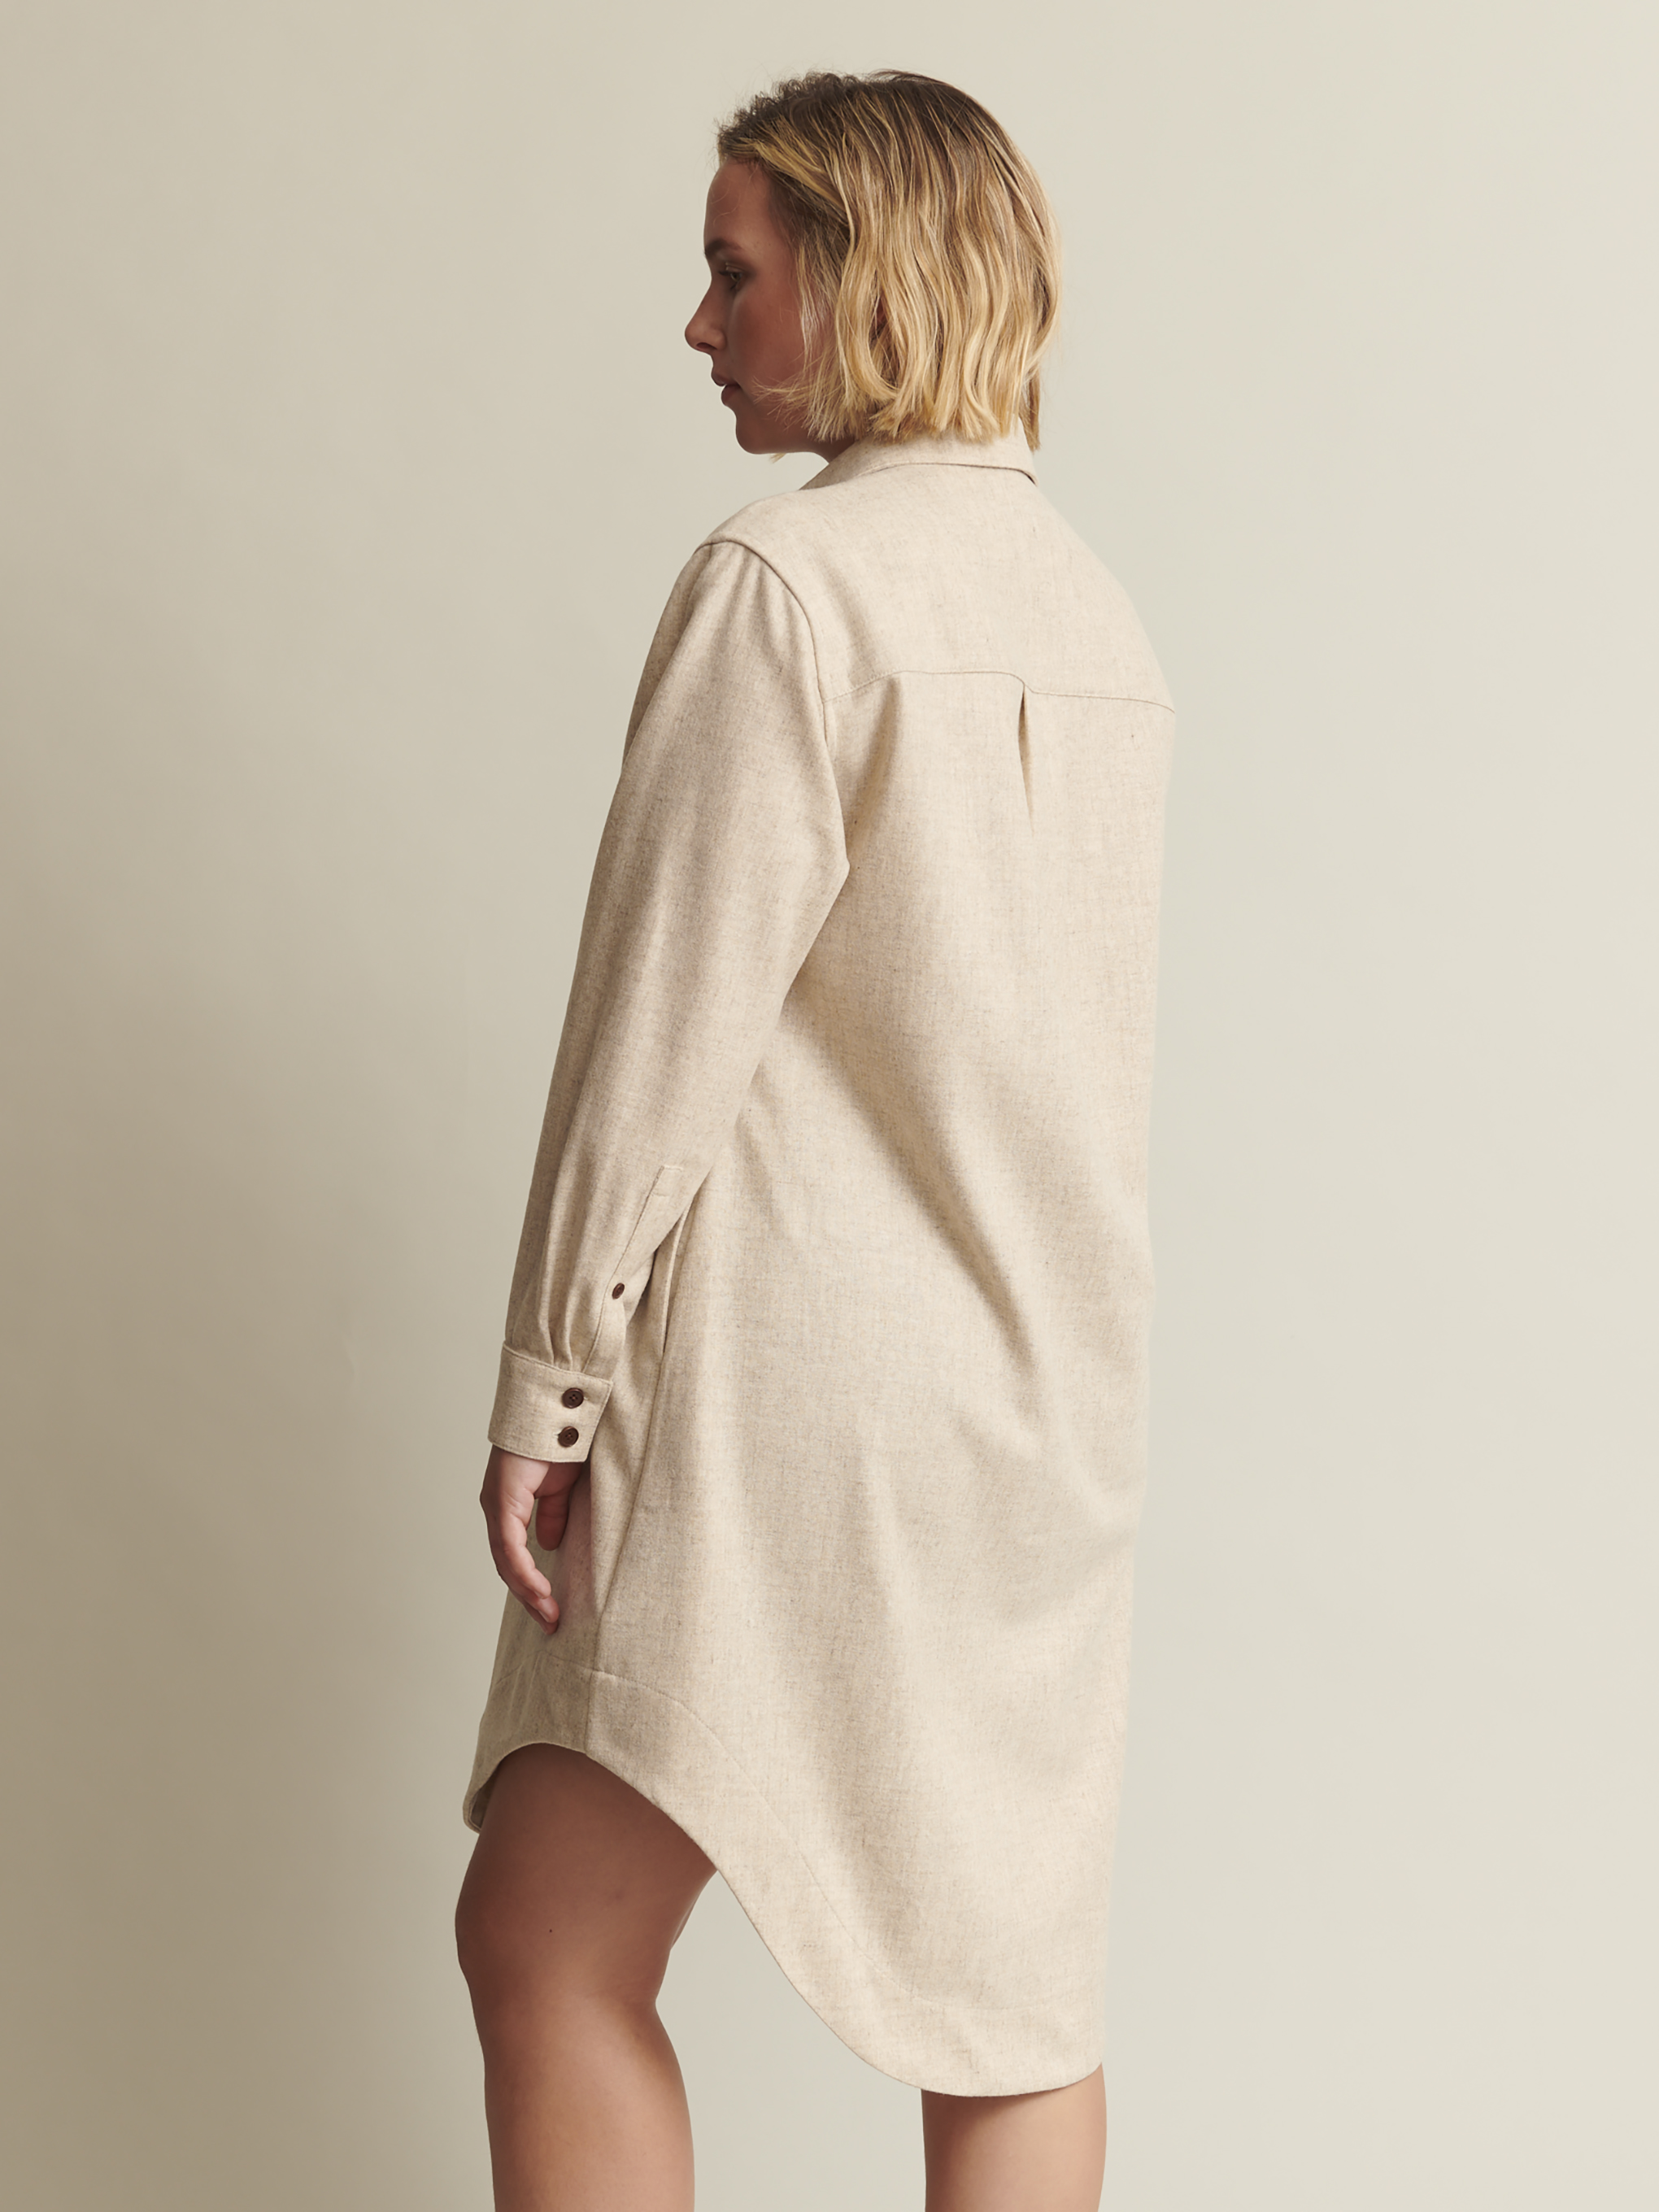 The Shirt Dress in 'With Cream' Merino Wool | NAOMI NOMI